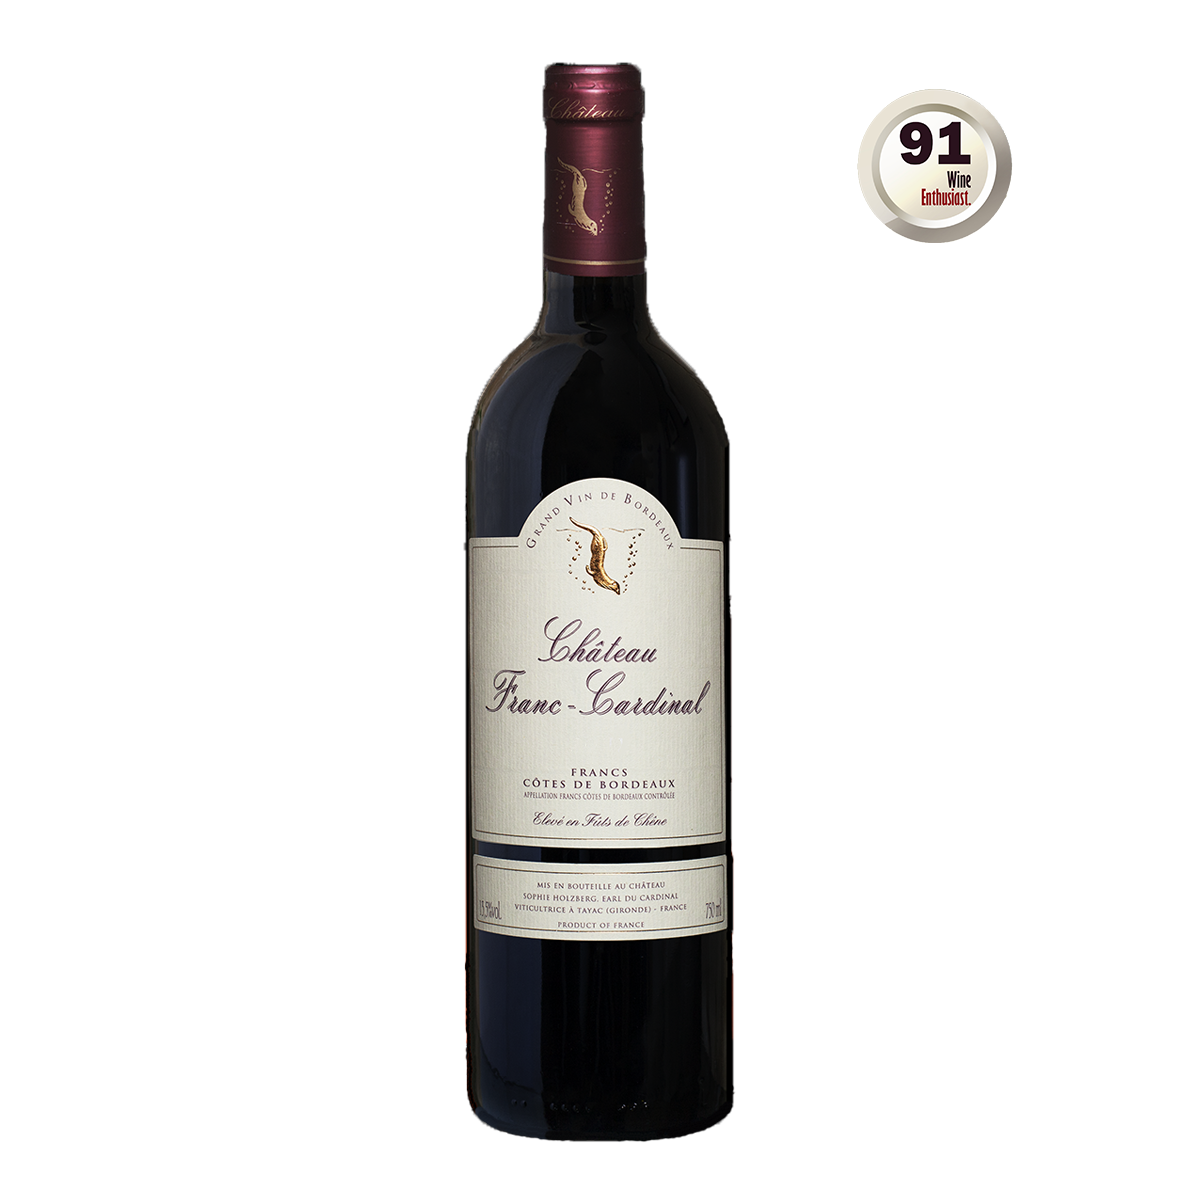 FRB1006-15 法國弗朗卡迪娜酒莊紅酒 Château Franc-Cardinal Francs Côtes de Bordeaux A.O.C.